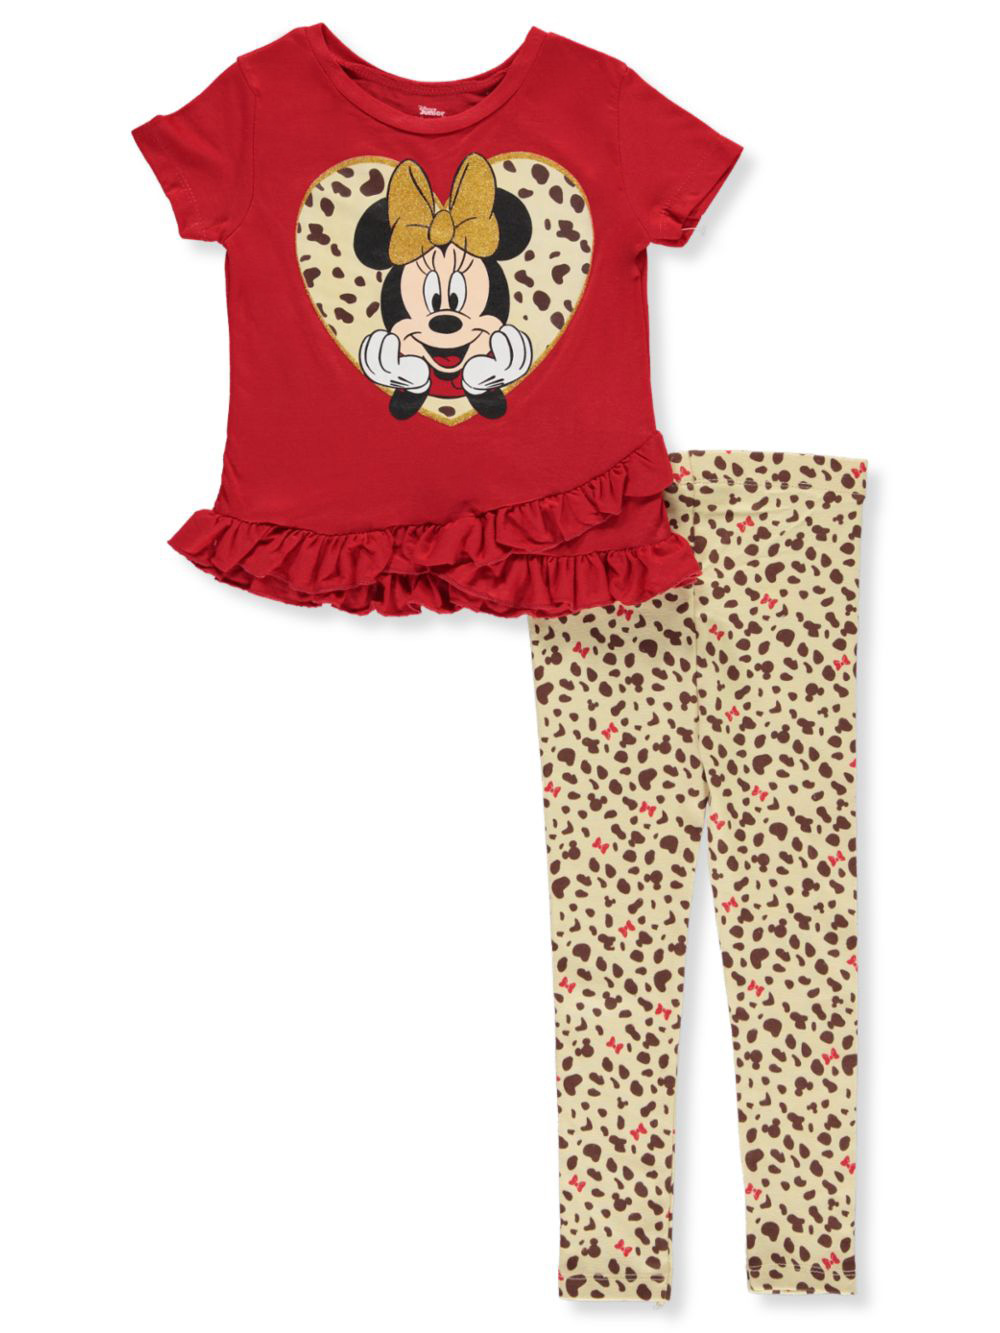 2 piece leopard outfit